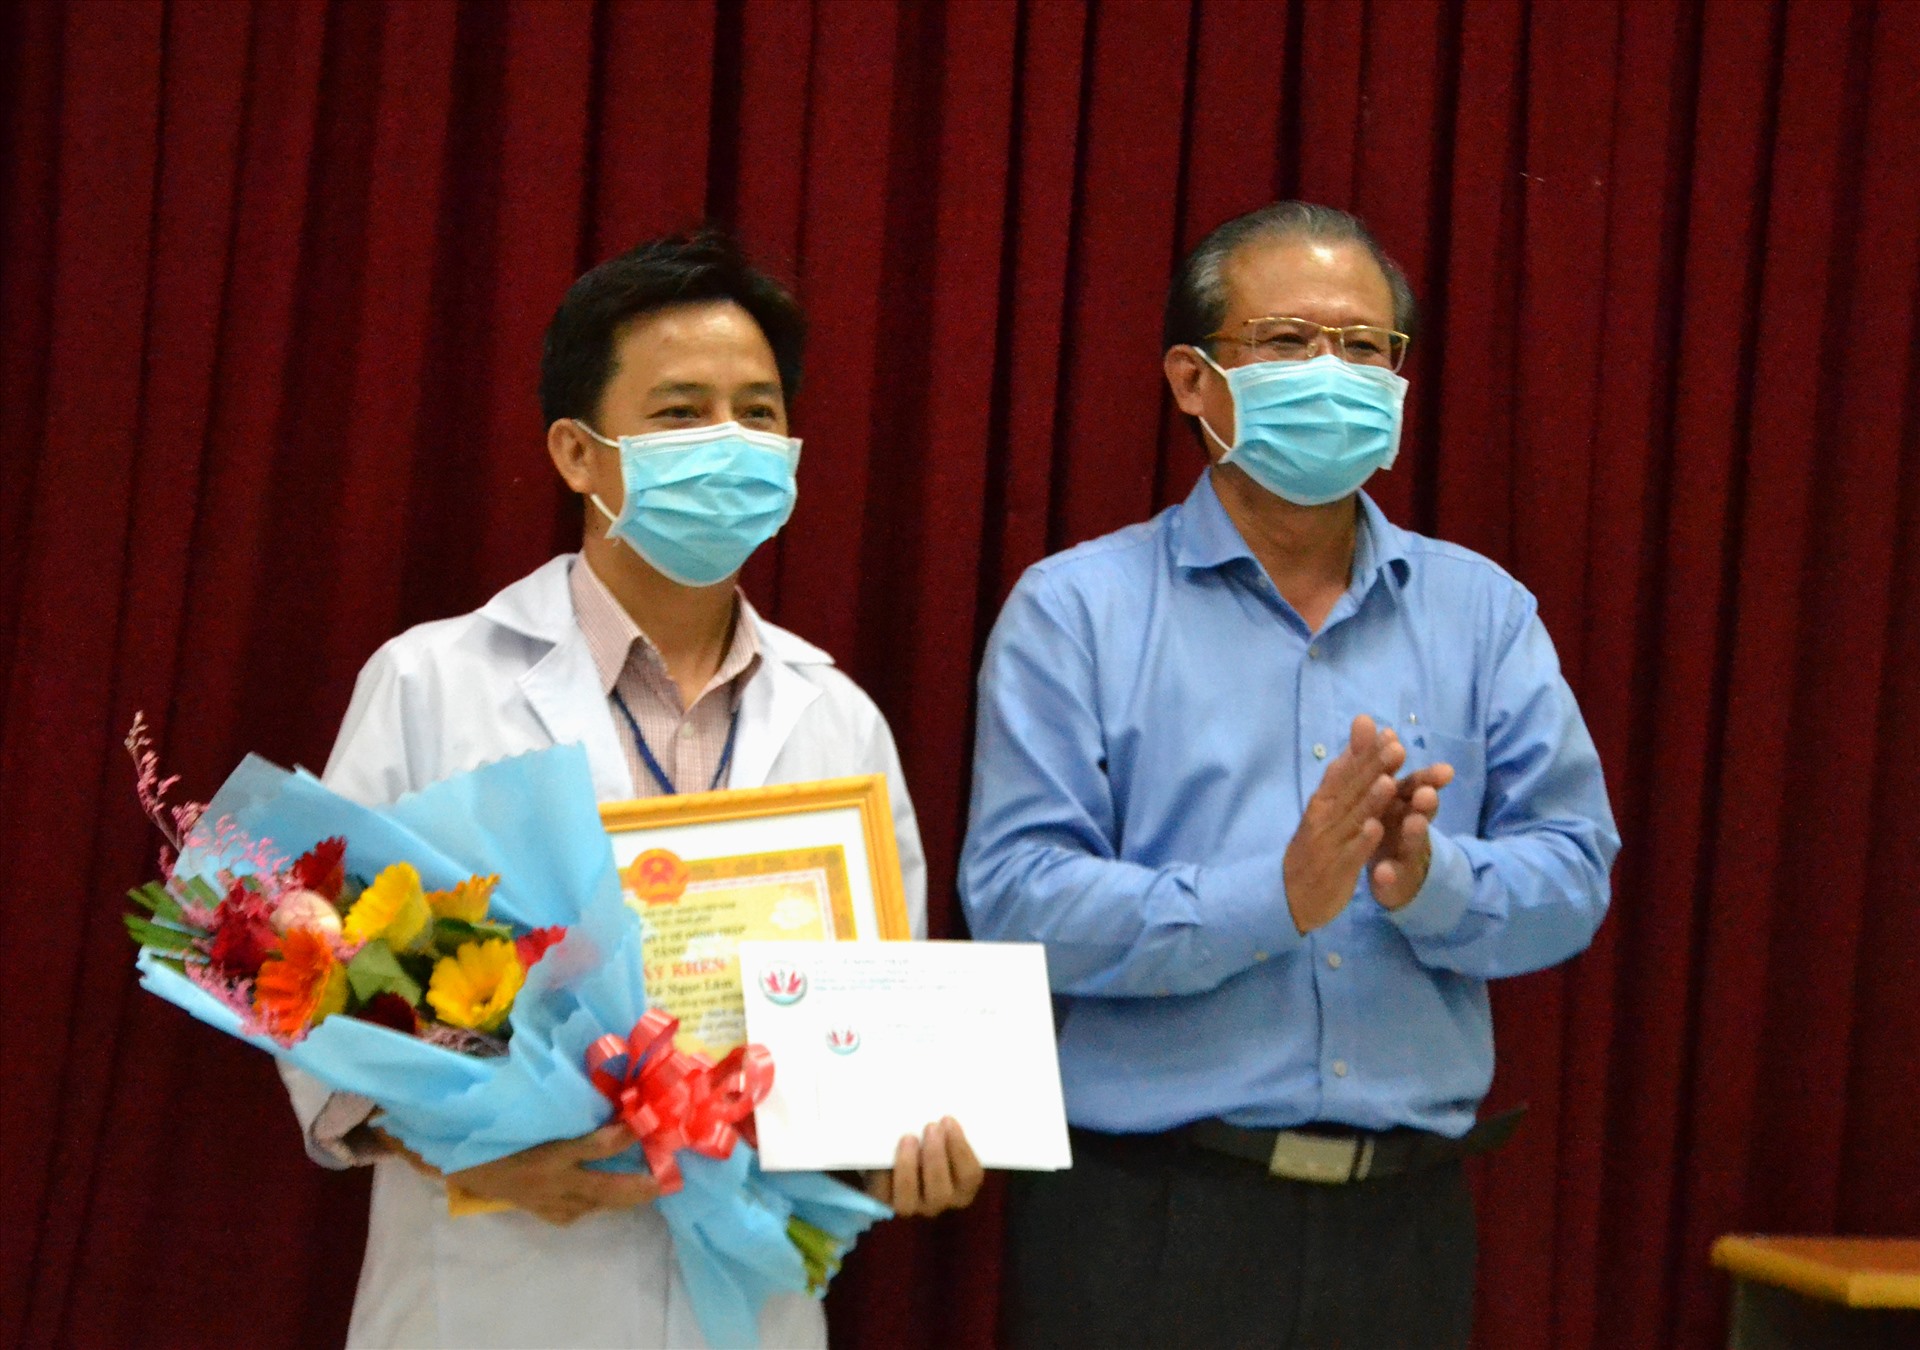 Bác sĩ Nguyễn Lâm Thái Thuận trao khen thưởng cho bác sĩ Lê Ngọc Lâm. Ảnh: LT